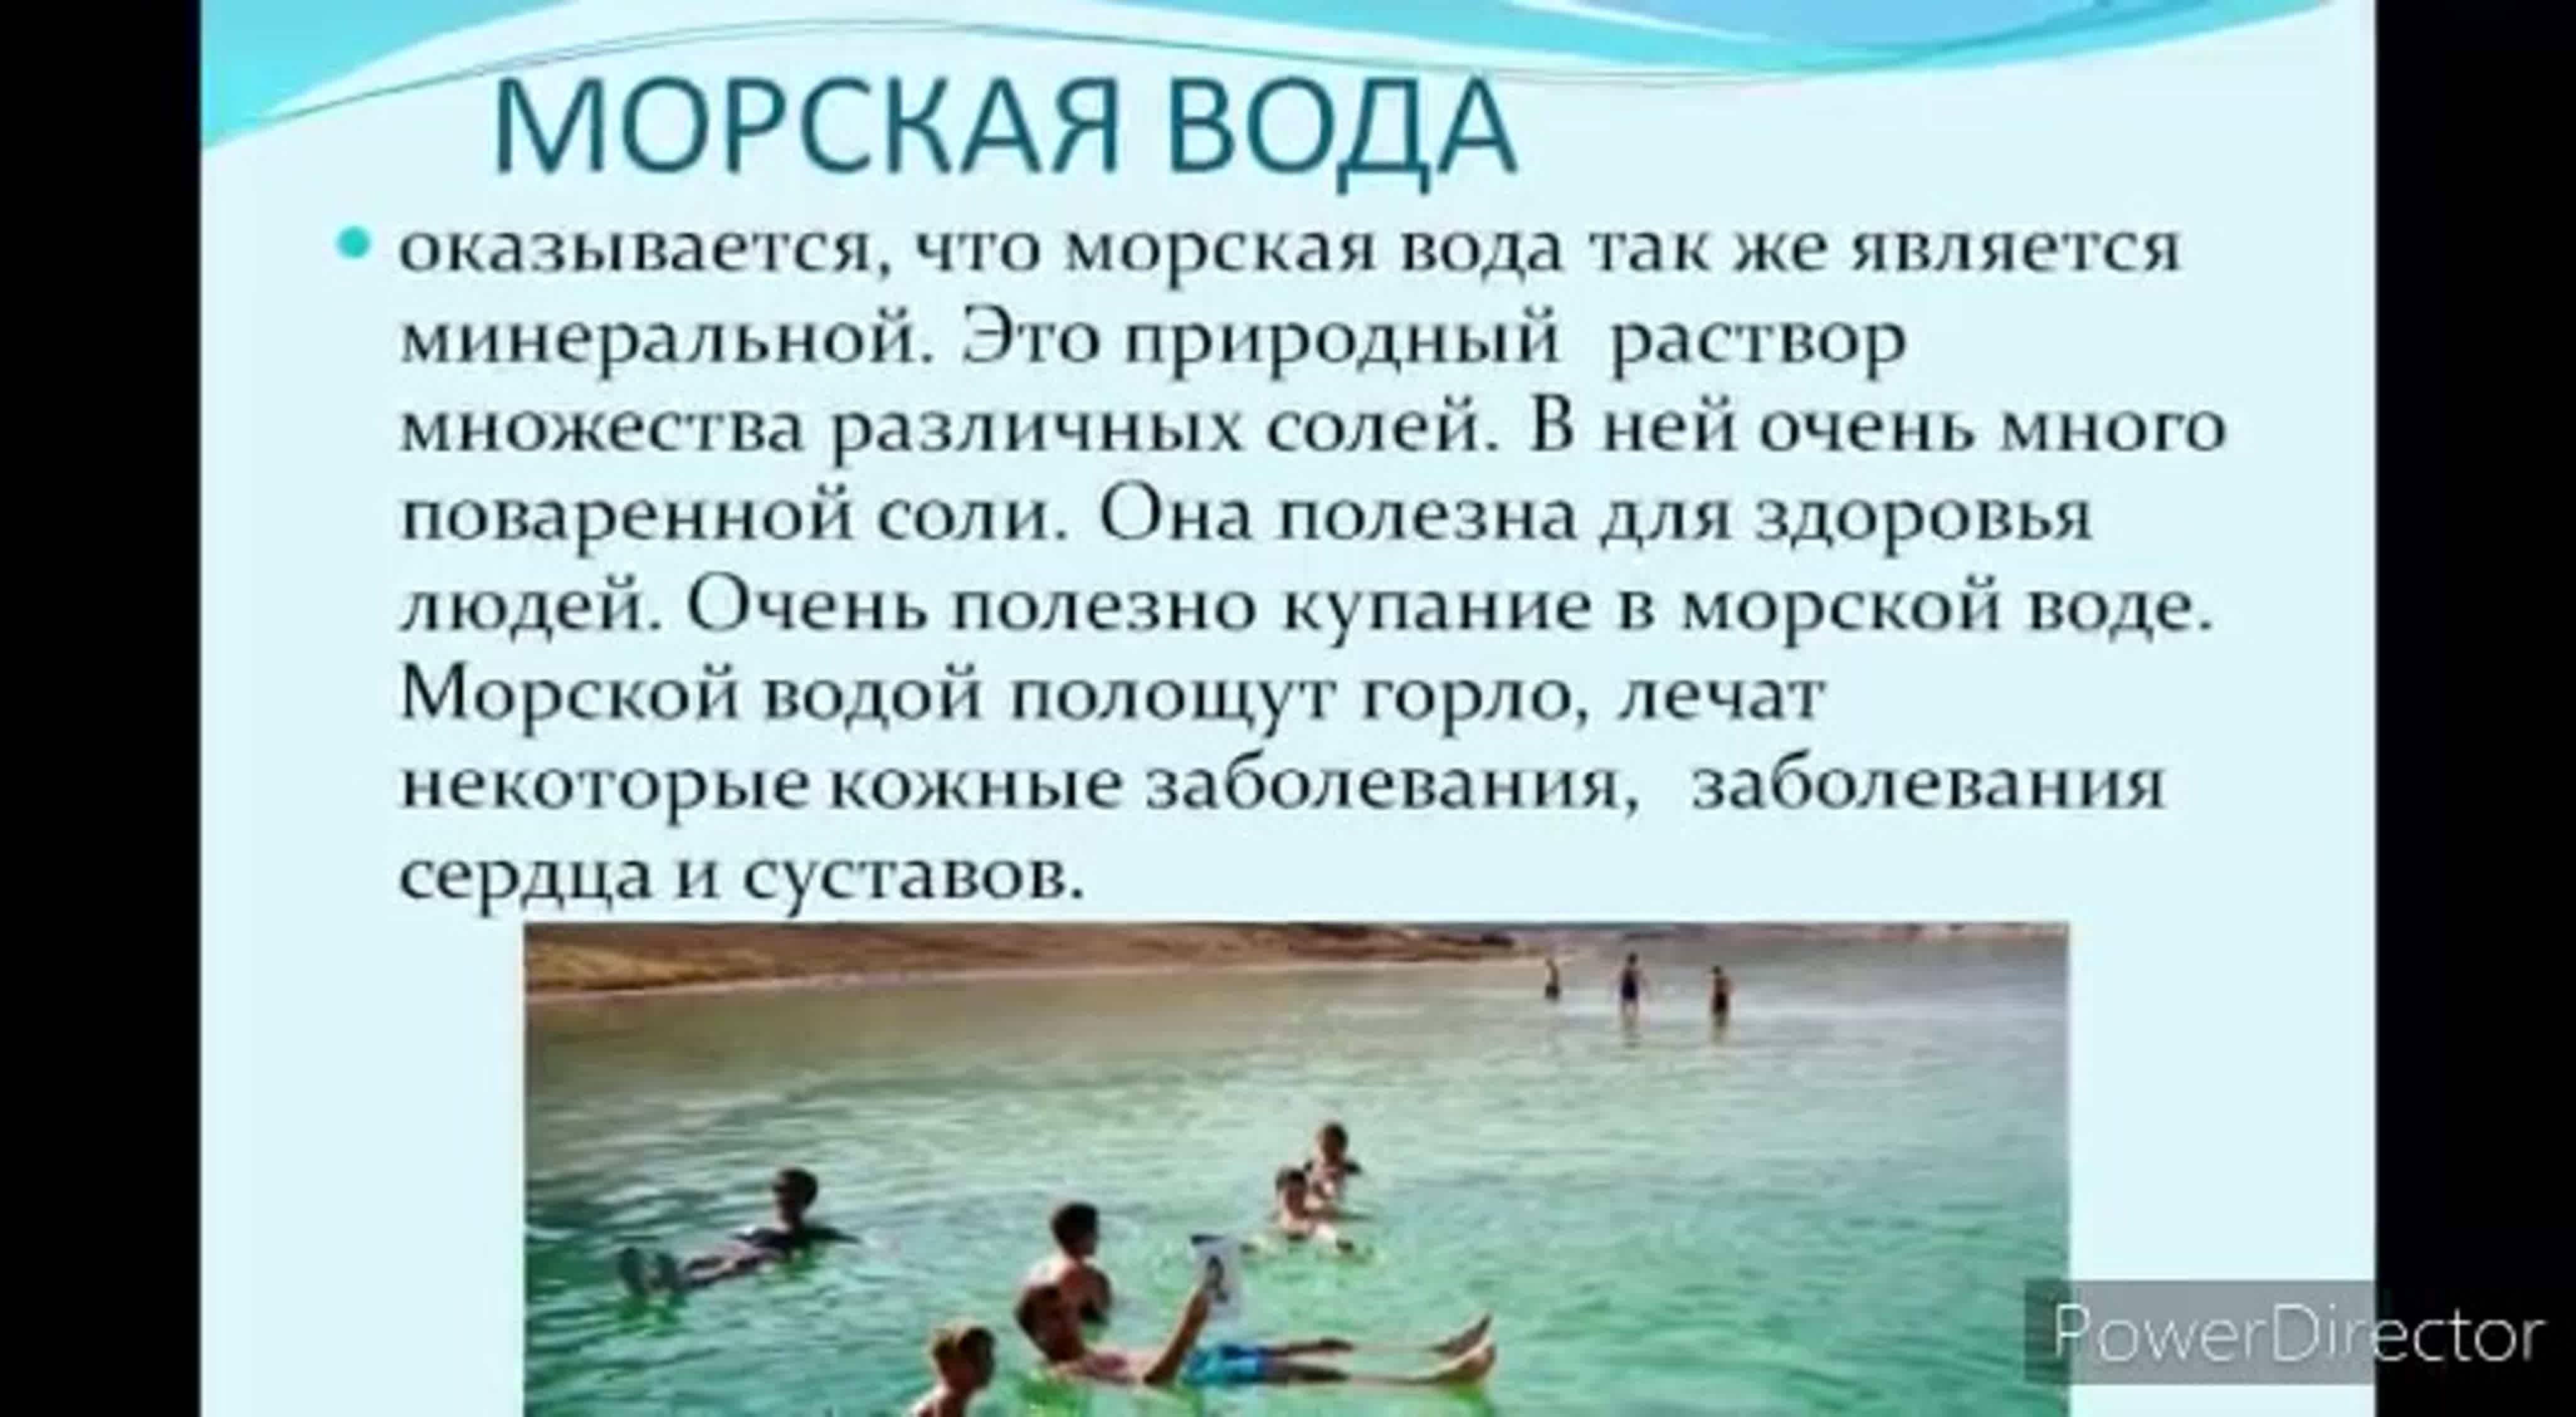 Купание вред. Море полезно для здоровья. Польза моря для здоровья человека. Польза моря для человека. Черное море польза для здоровья.